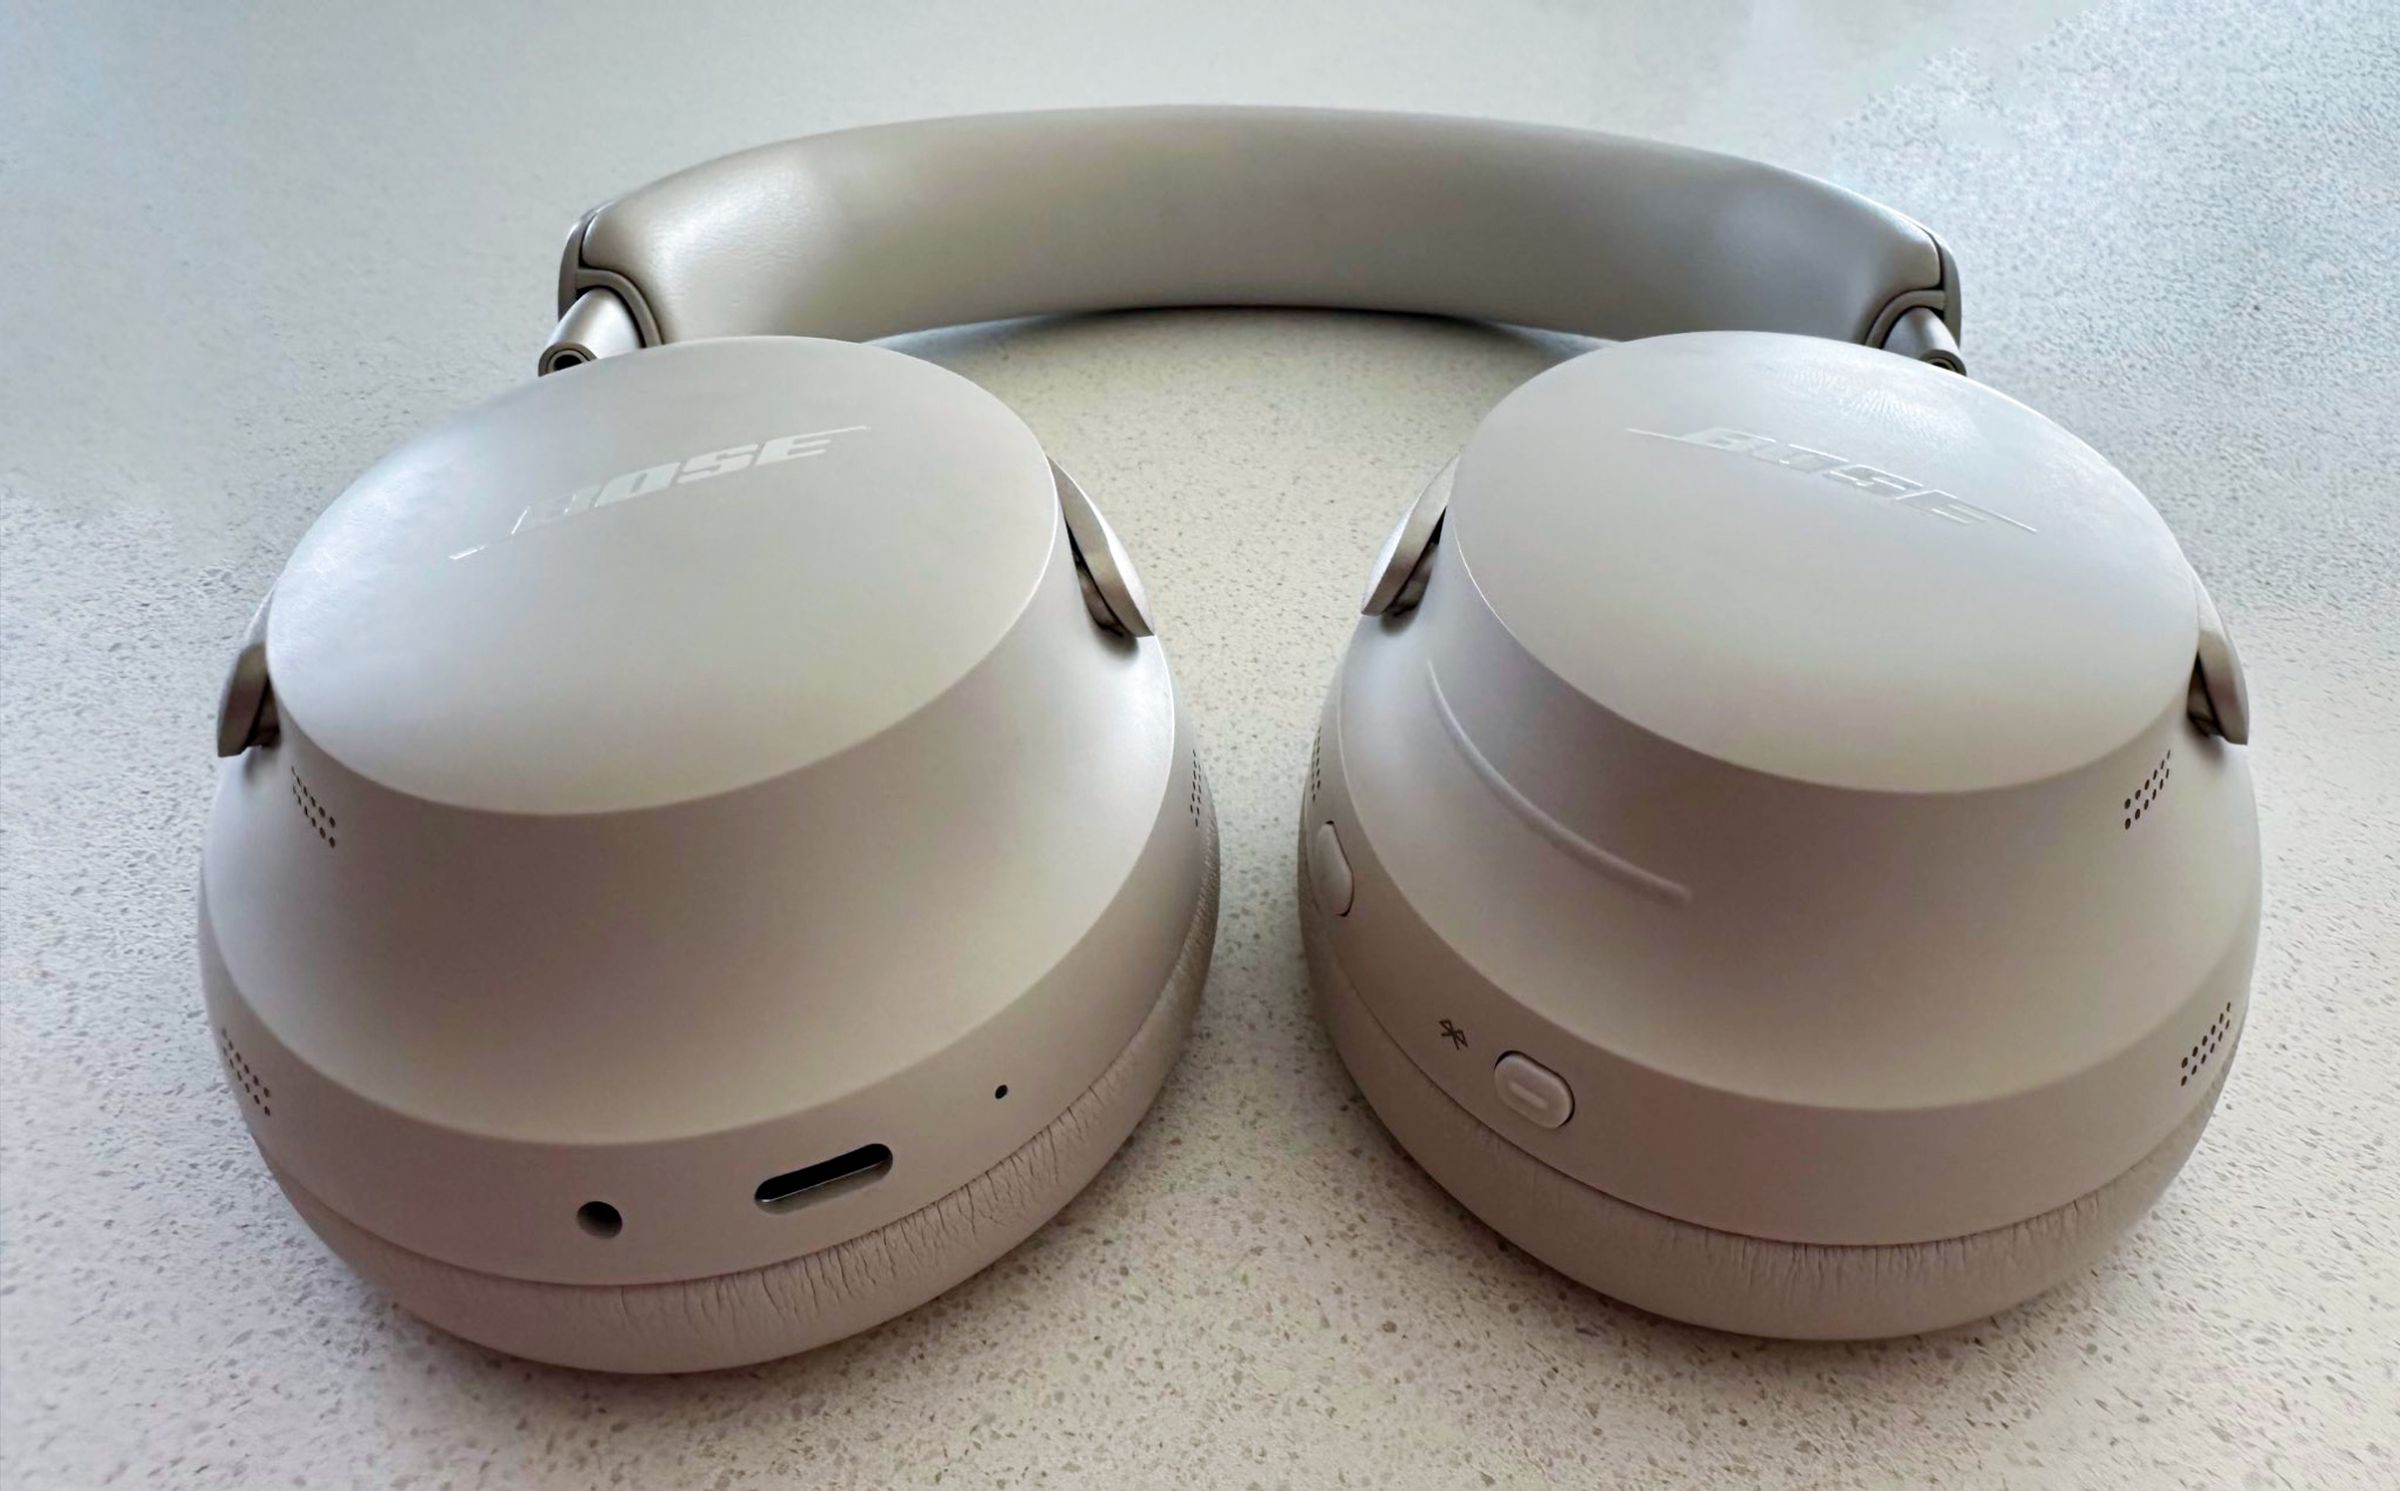 A hands-on photo of Bose’s QuietComfort Ultra Headphones.